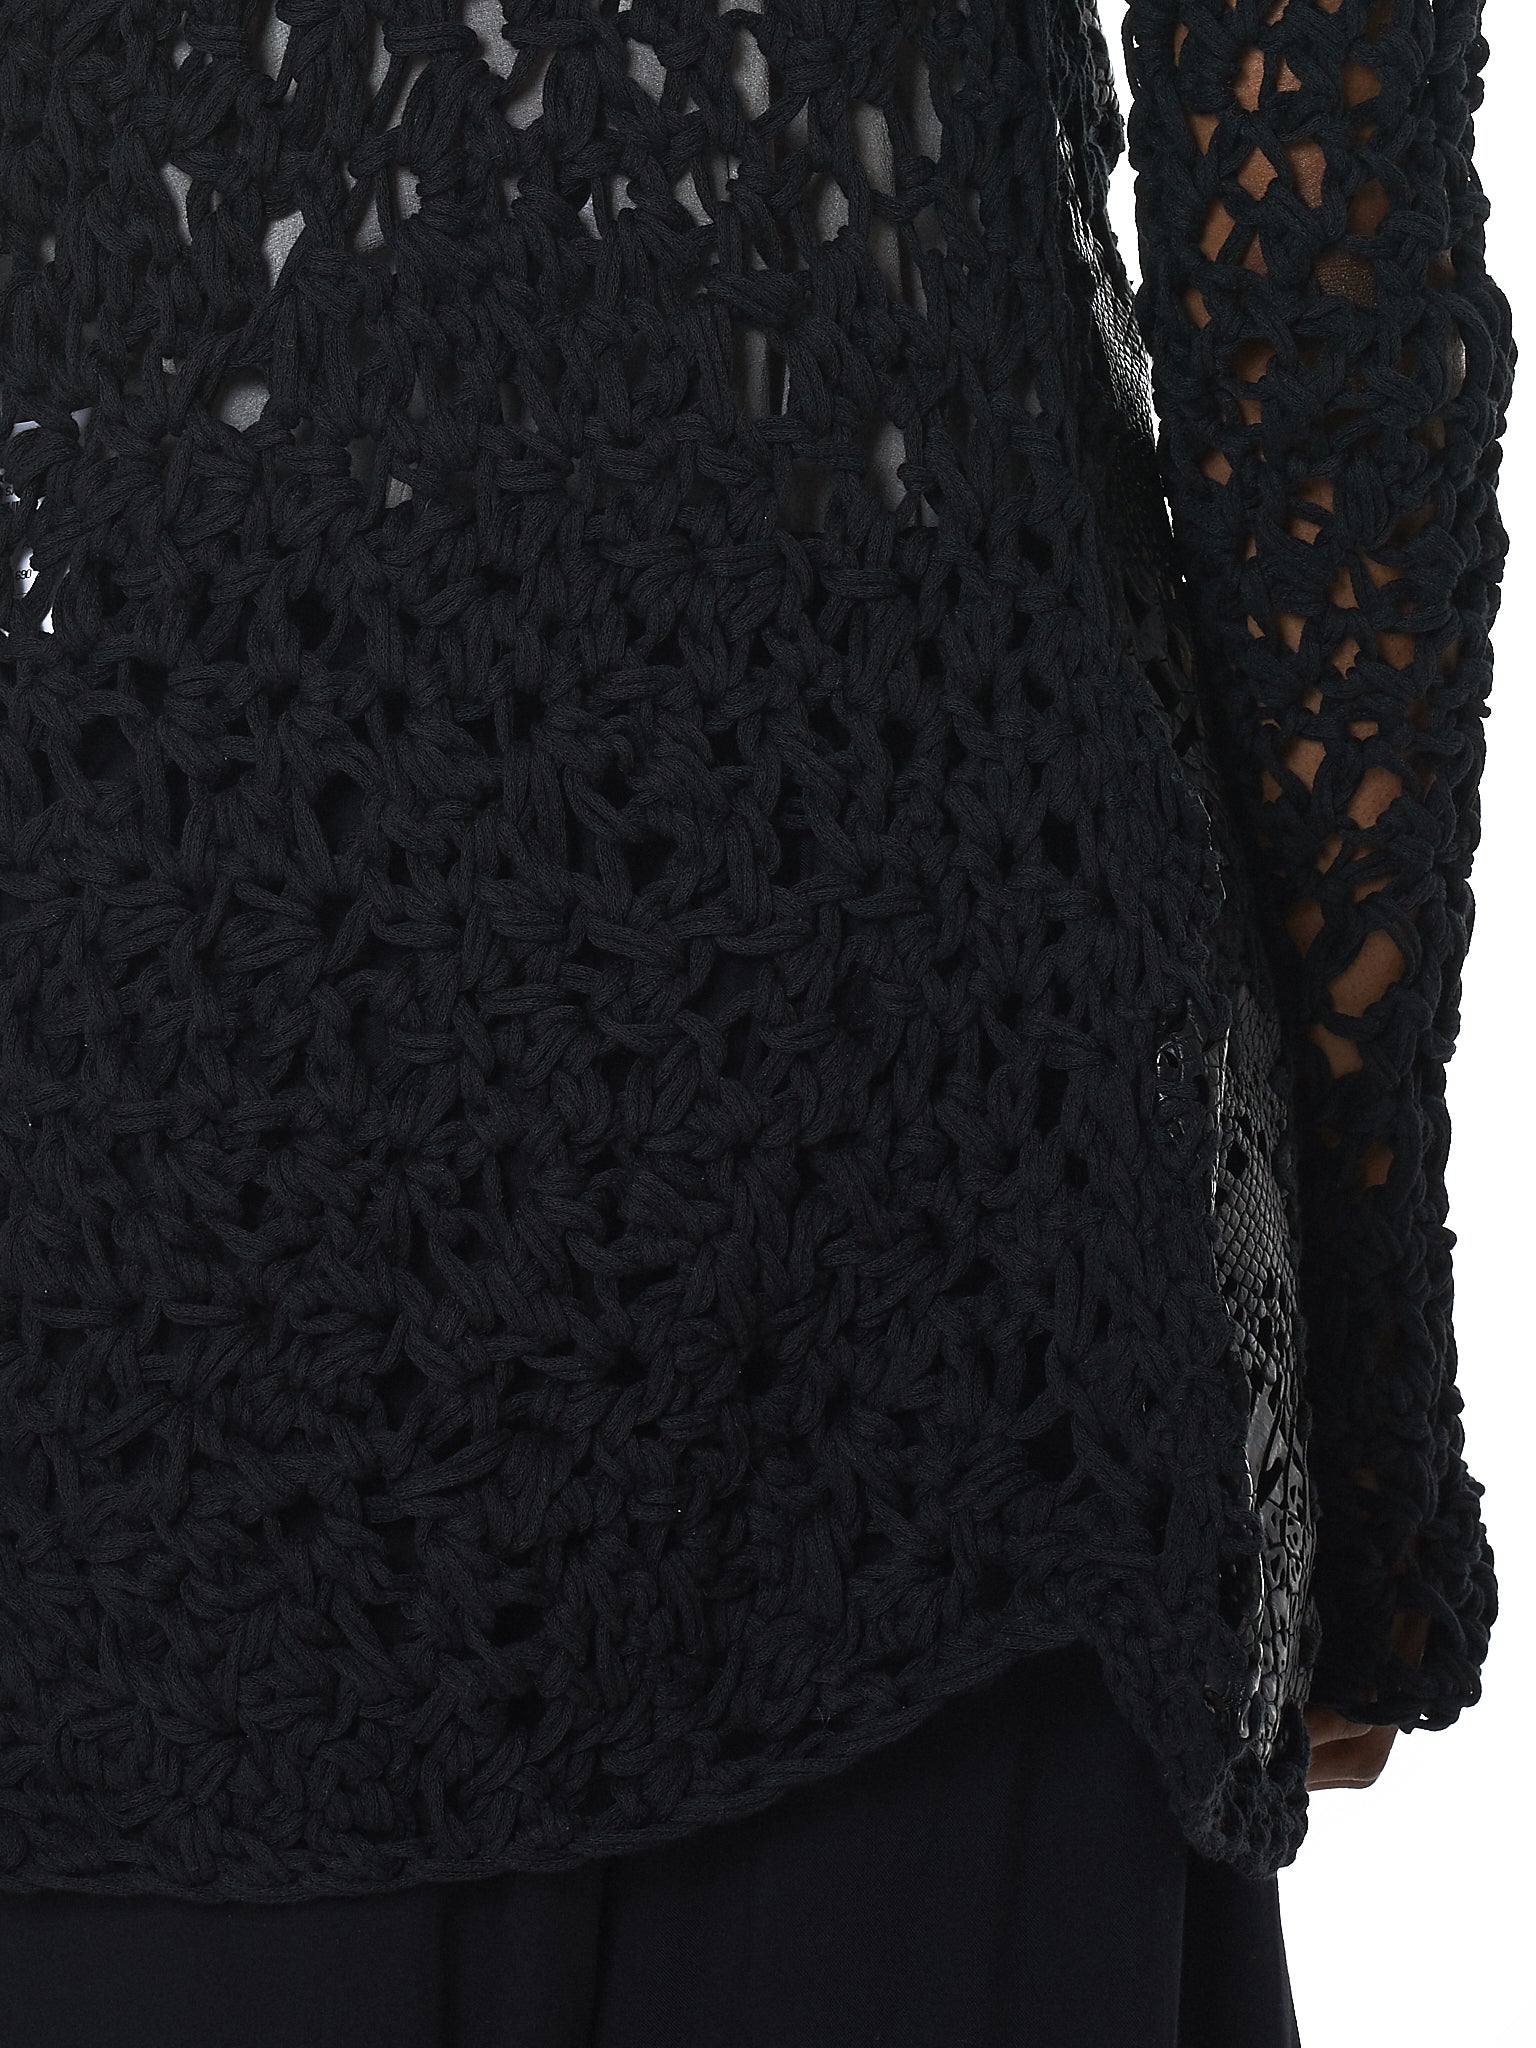 Alessandra Marchi Alligator Leather Cardigan - Hlorenzo Detail 3